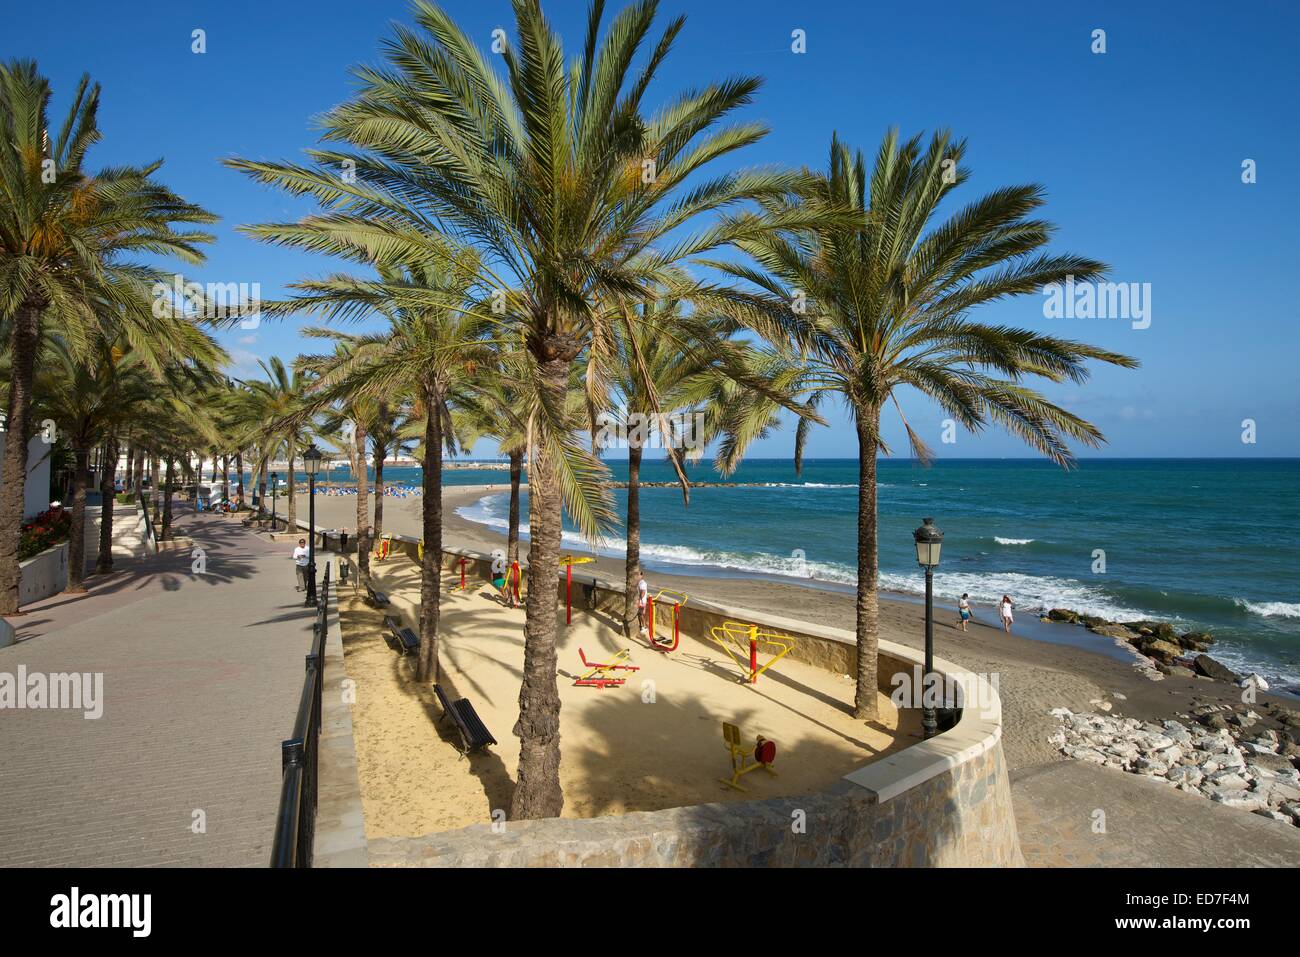 Beach promenade Paseo Maritimo, Marbella, Costa del Sol, Andalucia, Spain Stock Photo